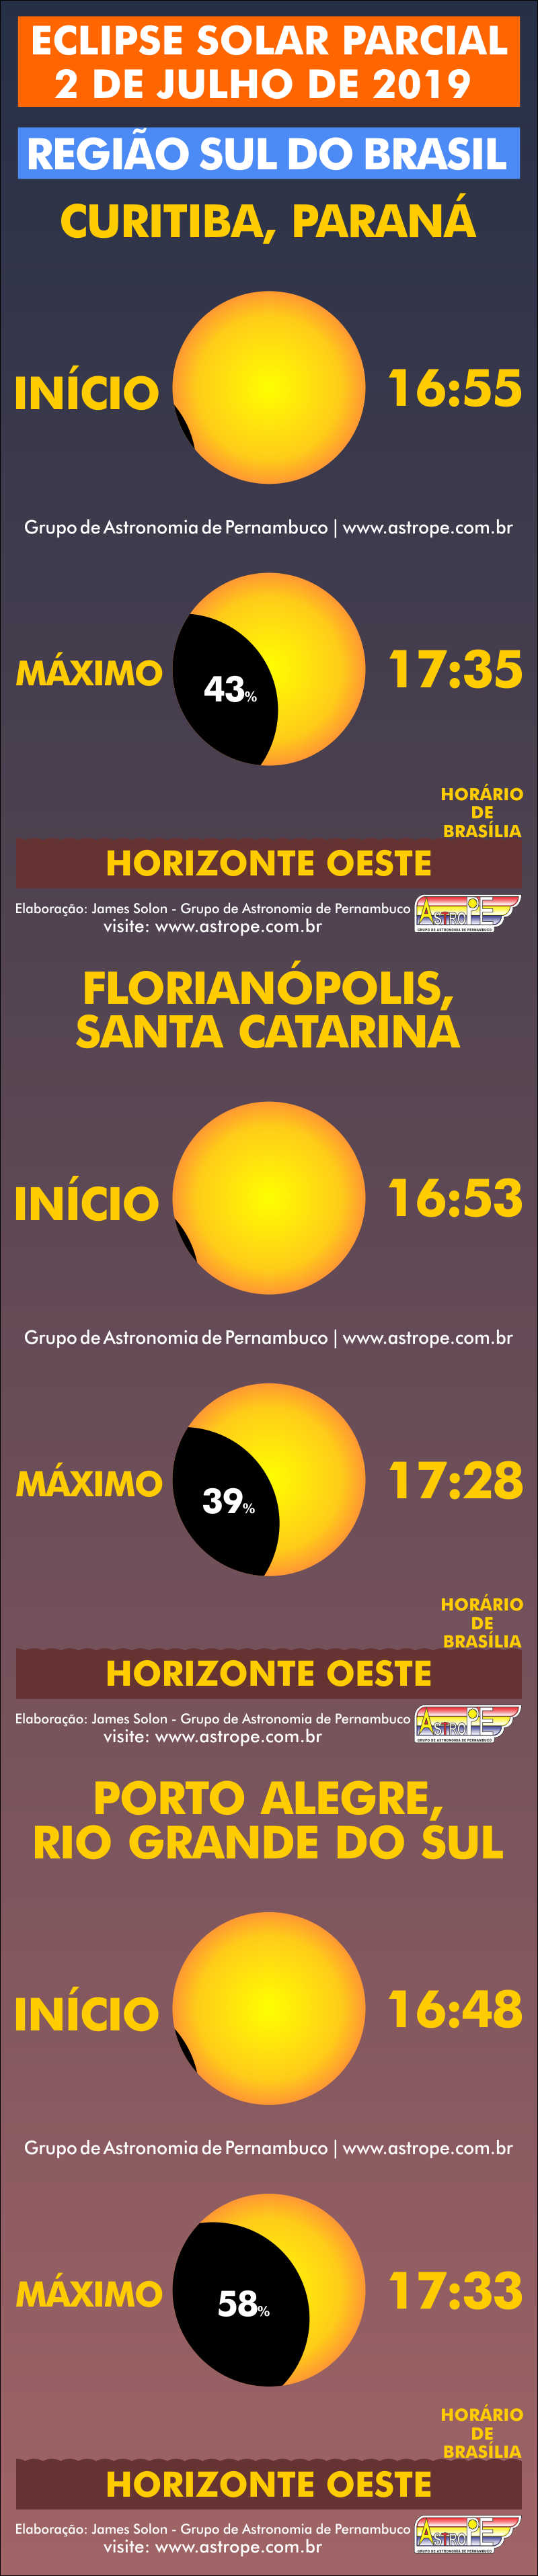 Horários do Eclipse Solar Parcial de 2 de julho de 2019 no Brasil na Região Sul. Crédito: AstroPE.